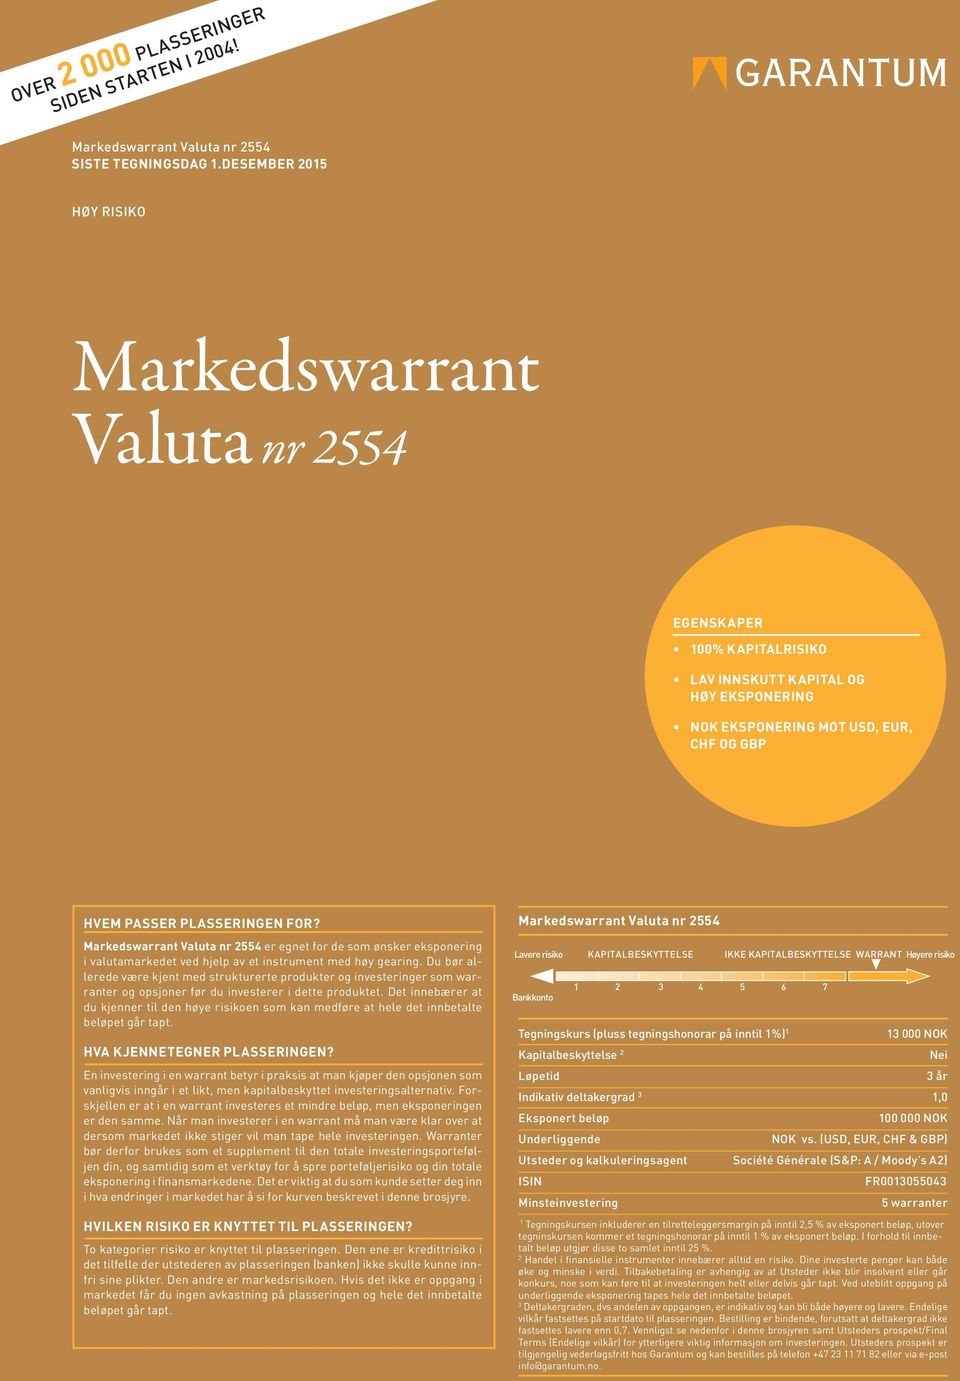 Markedswarrant Valuta nr 2554 er egnet for de som ønsker eksponering i valutamarkedet ved hjelp av et instrument med høy gearing.